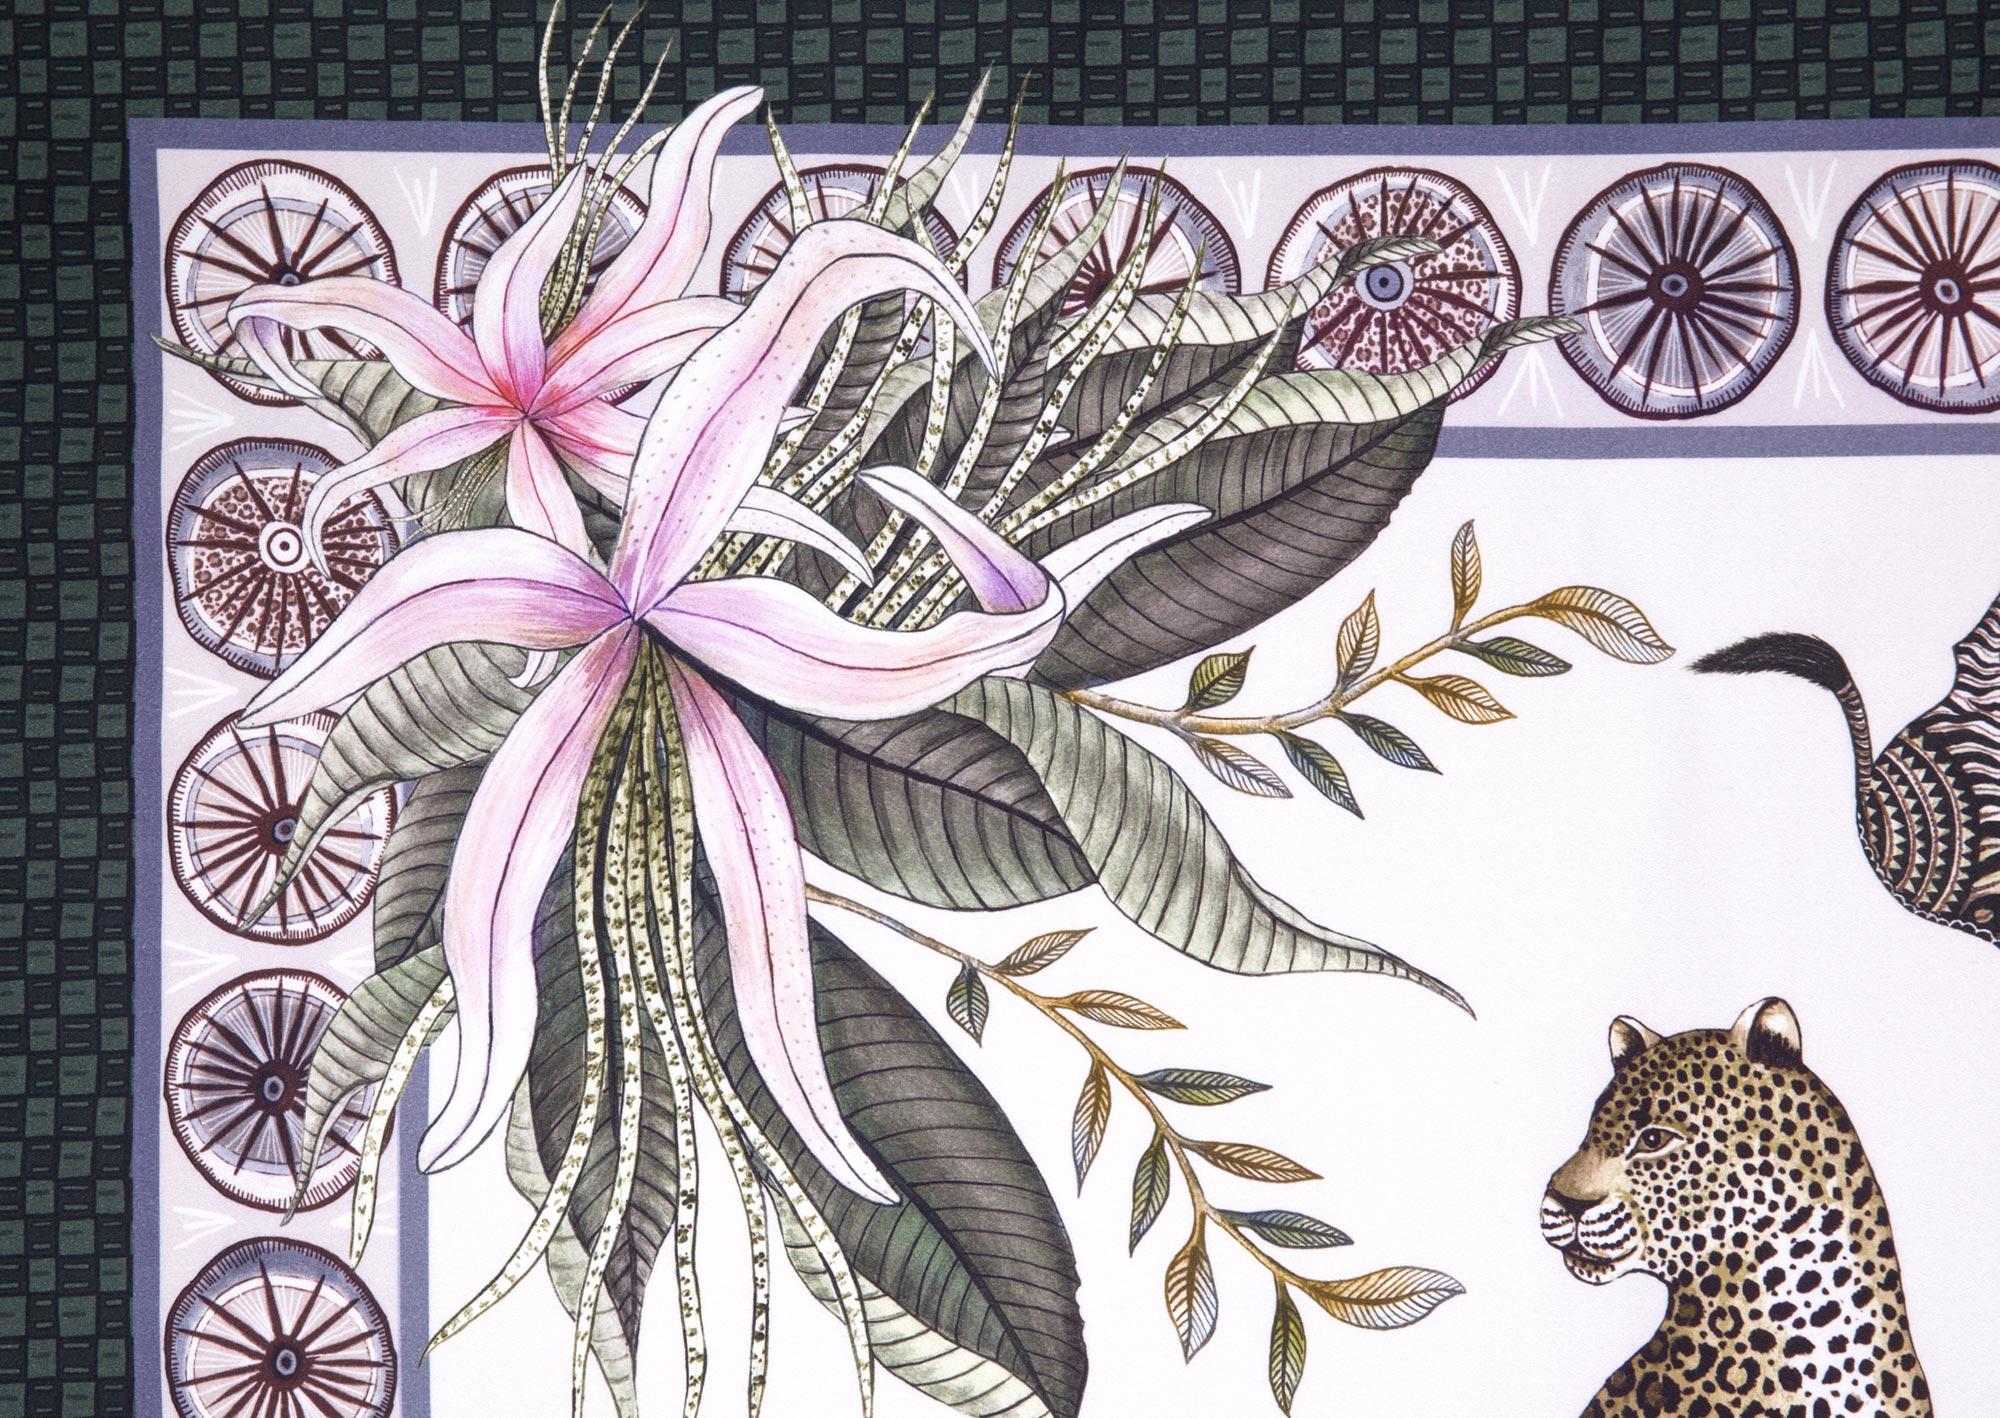 Leopard Lily Tablecloth - Cotton - Safari Stone - Square